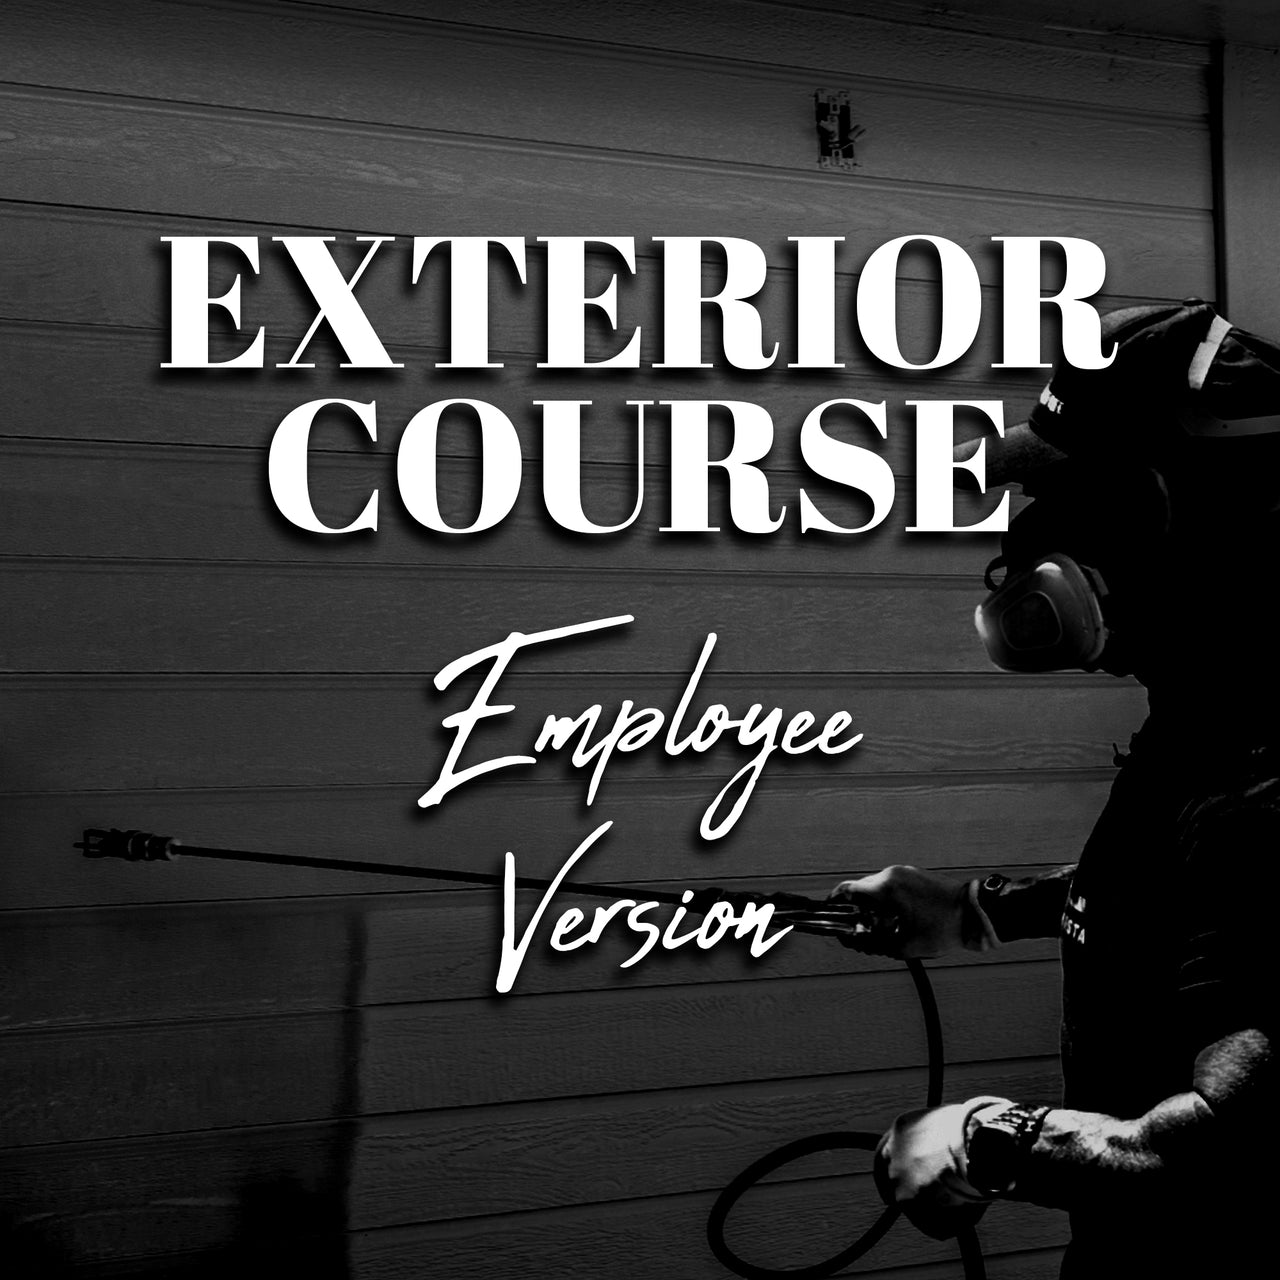 Employee Exterior Course